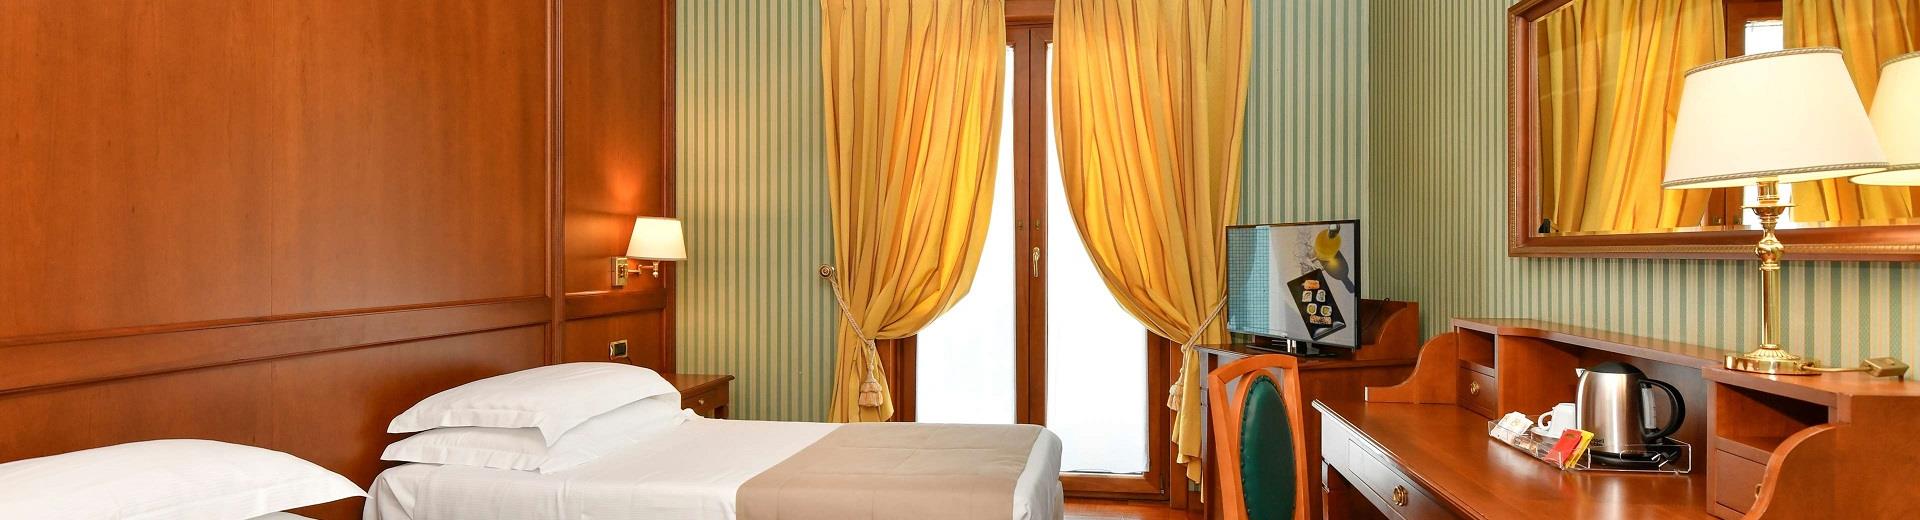 Viaggi a Napoli con la tua famiglia? Scegli il comfort unico delle camere Family di Hotel Ferrari! Scopri i dettagli!